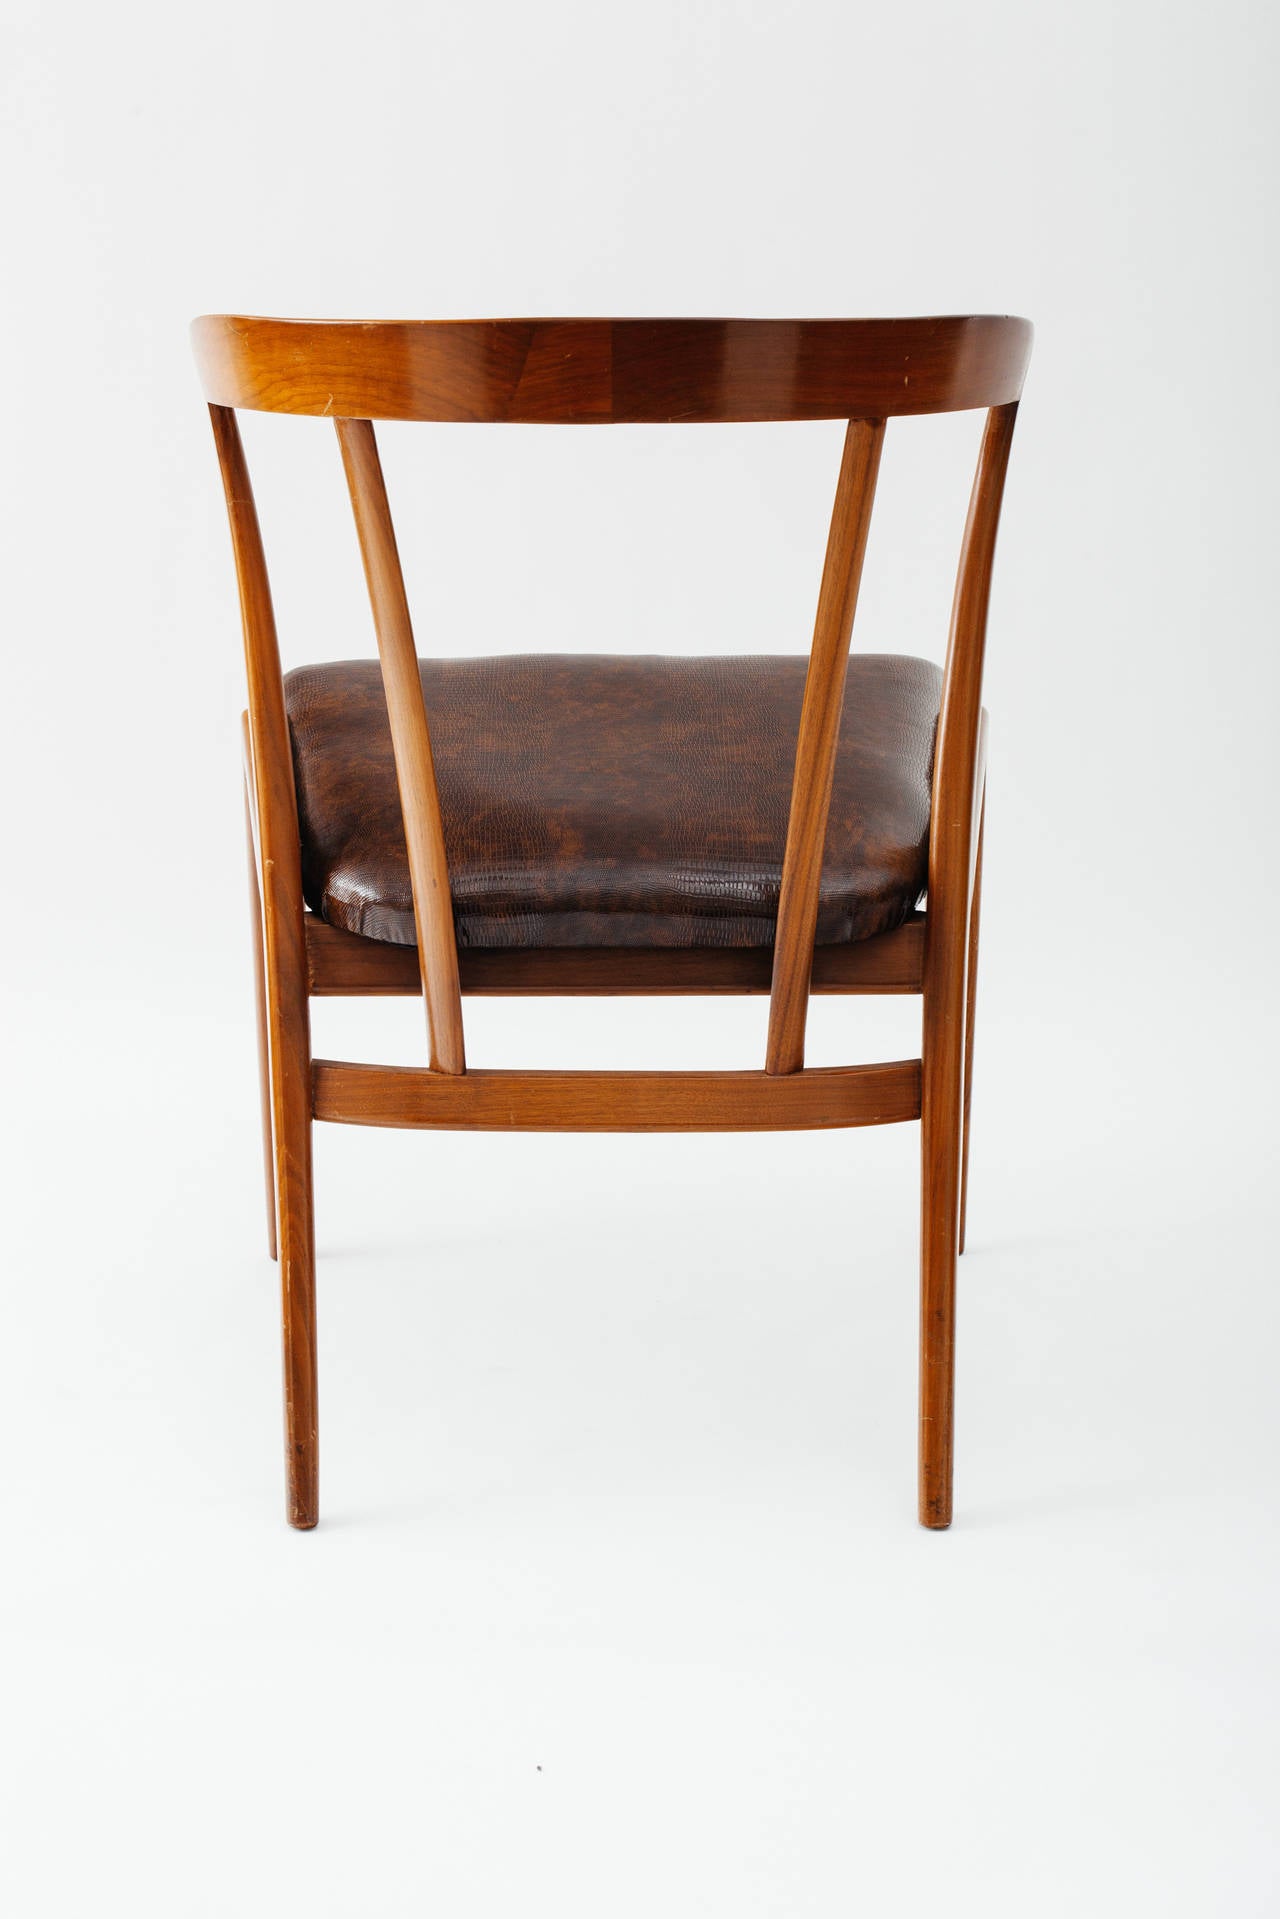 Upholstery Singer & Sons 1950's Italian Walnut Desk Chair